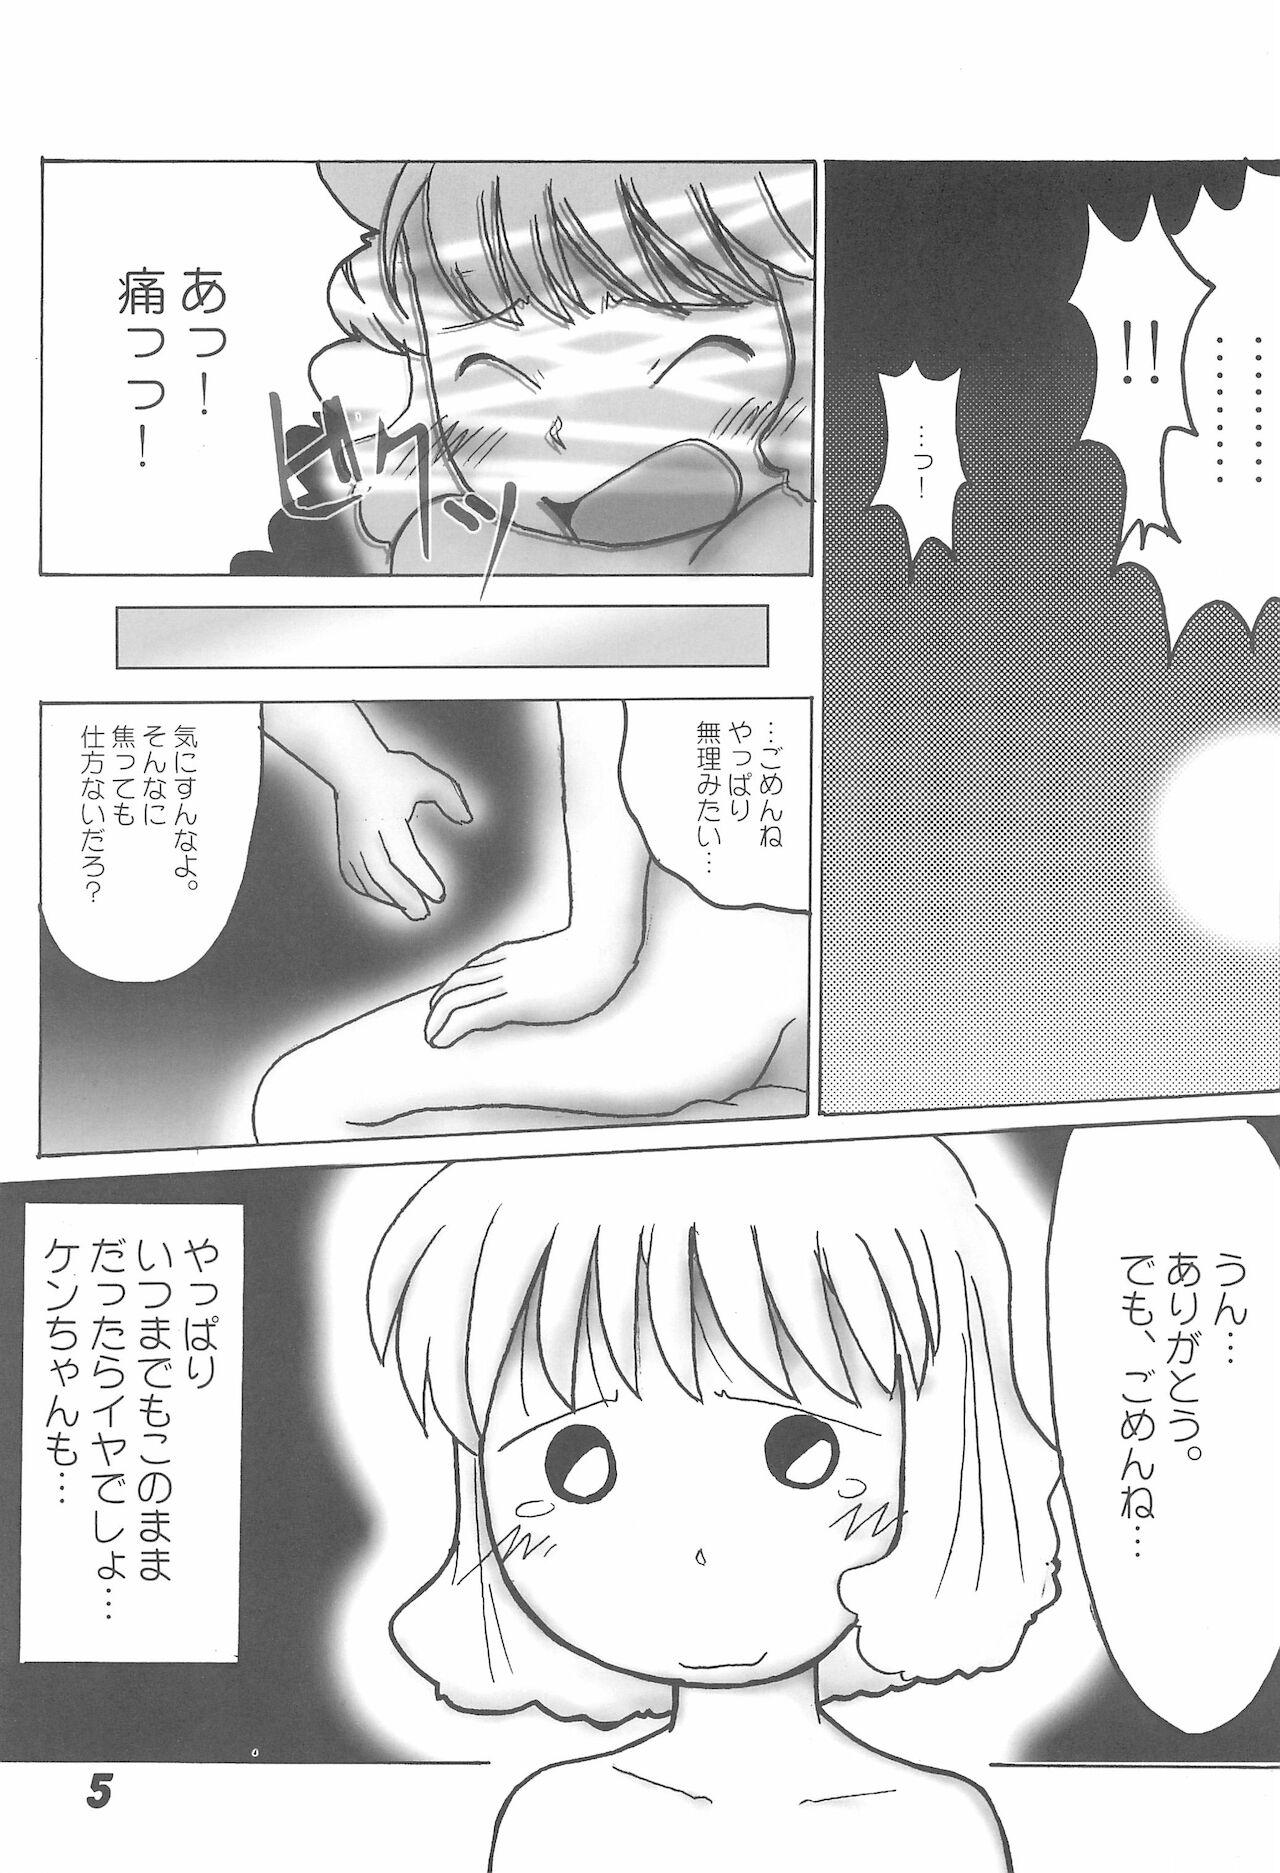 Assfuck Zettai nandakara ne... - Azuki-chan Ebony - Page 5